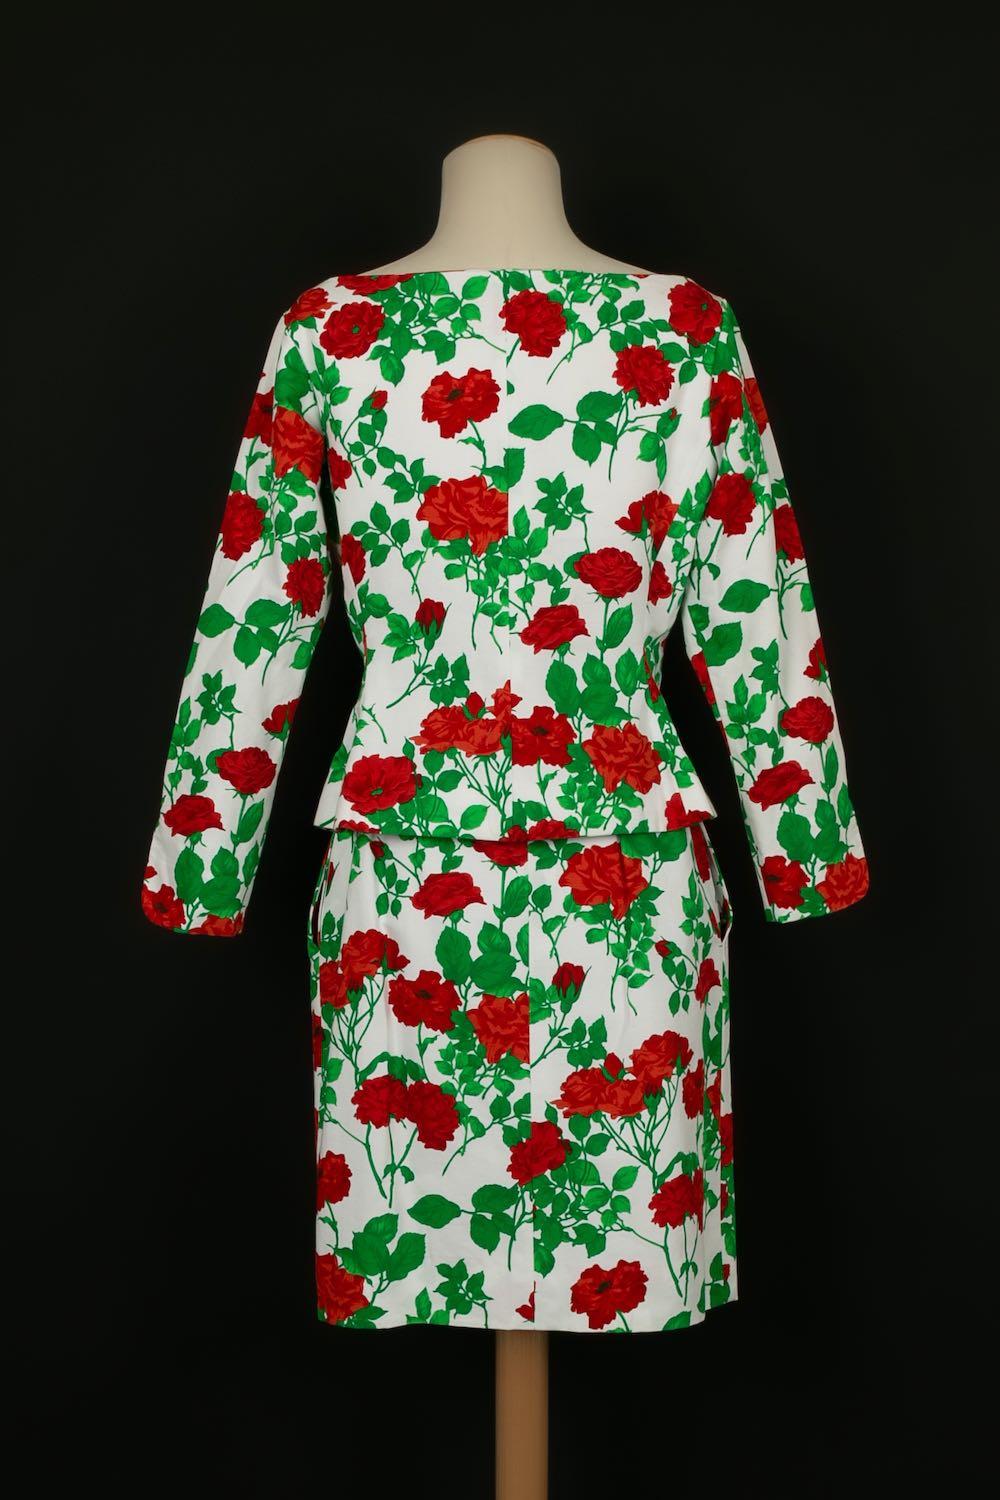 Yves Saint Laurent - (Made in France) Ensemble composé d'une jupe et d'une veste à imprimé floral. Taille indiquée 42FR.

Informations complémentaires : 
Dimensions : Veste : Largeur des épaules : 42 cm, Poitrine : 44 cm, Longueur des manches : 55